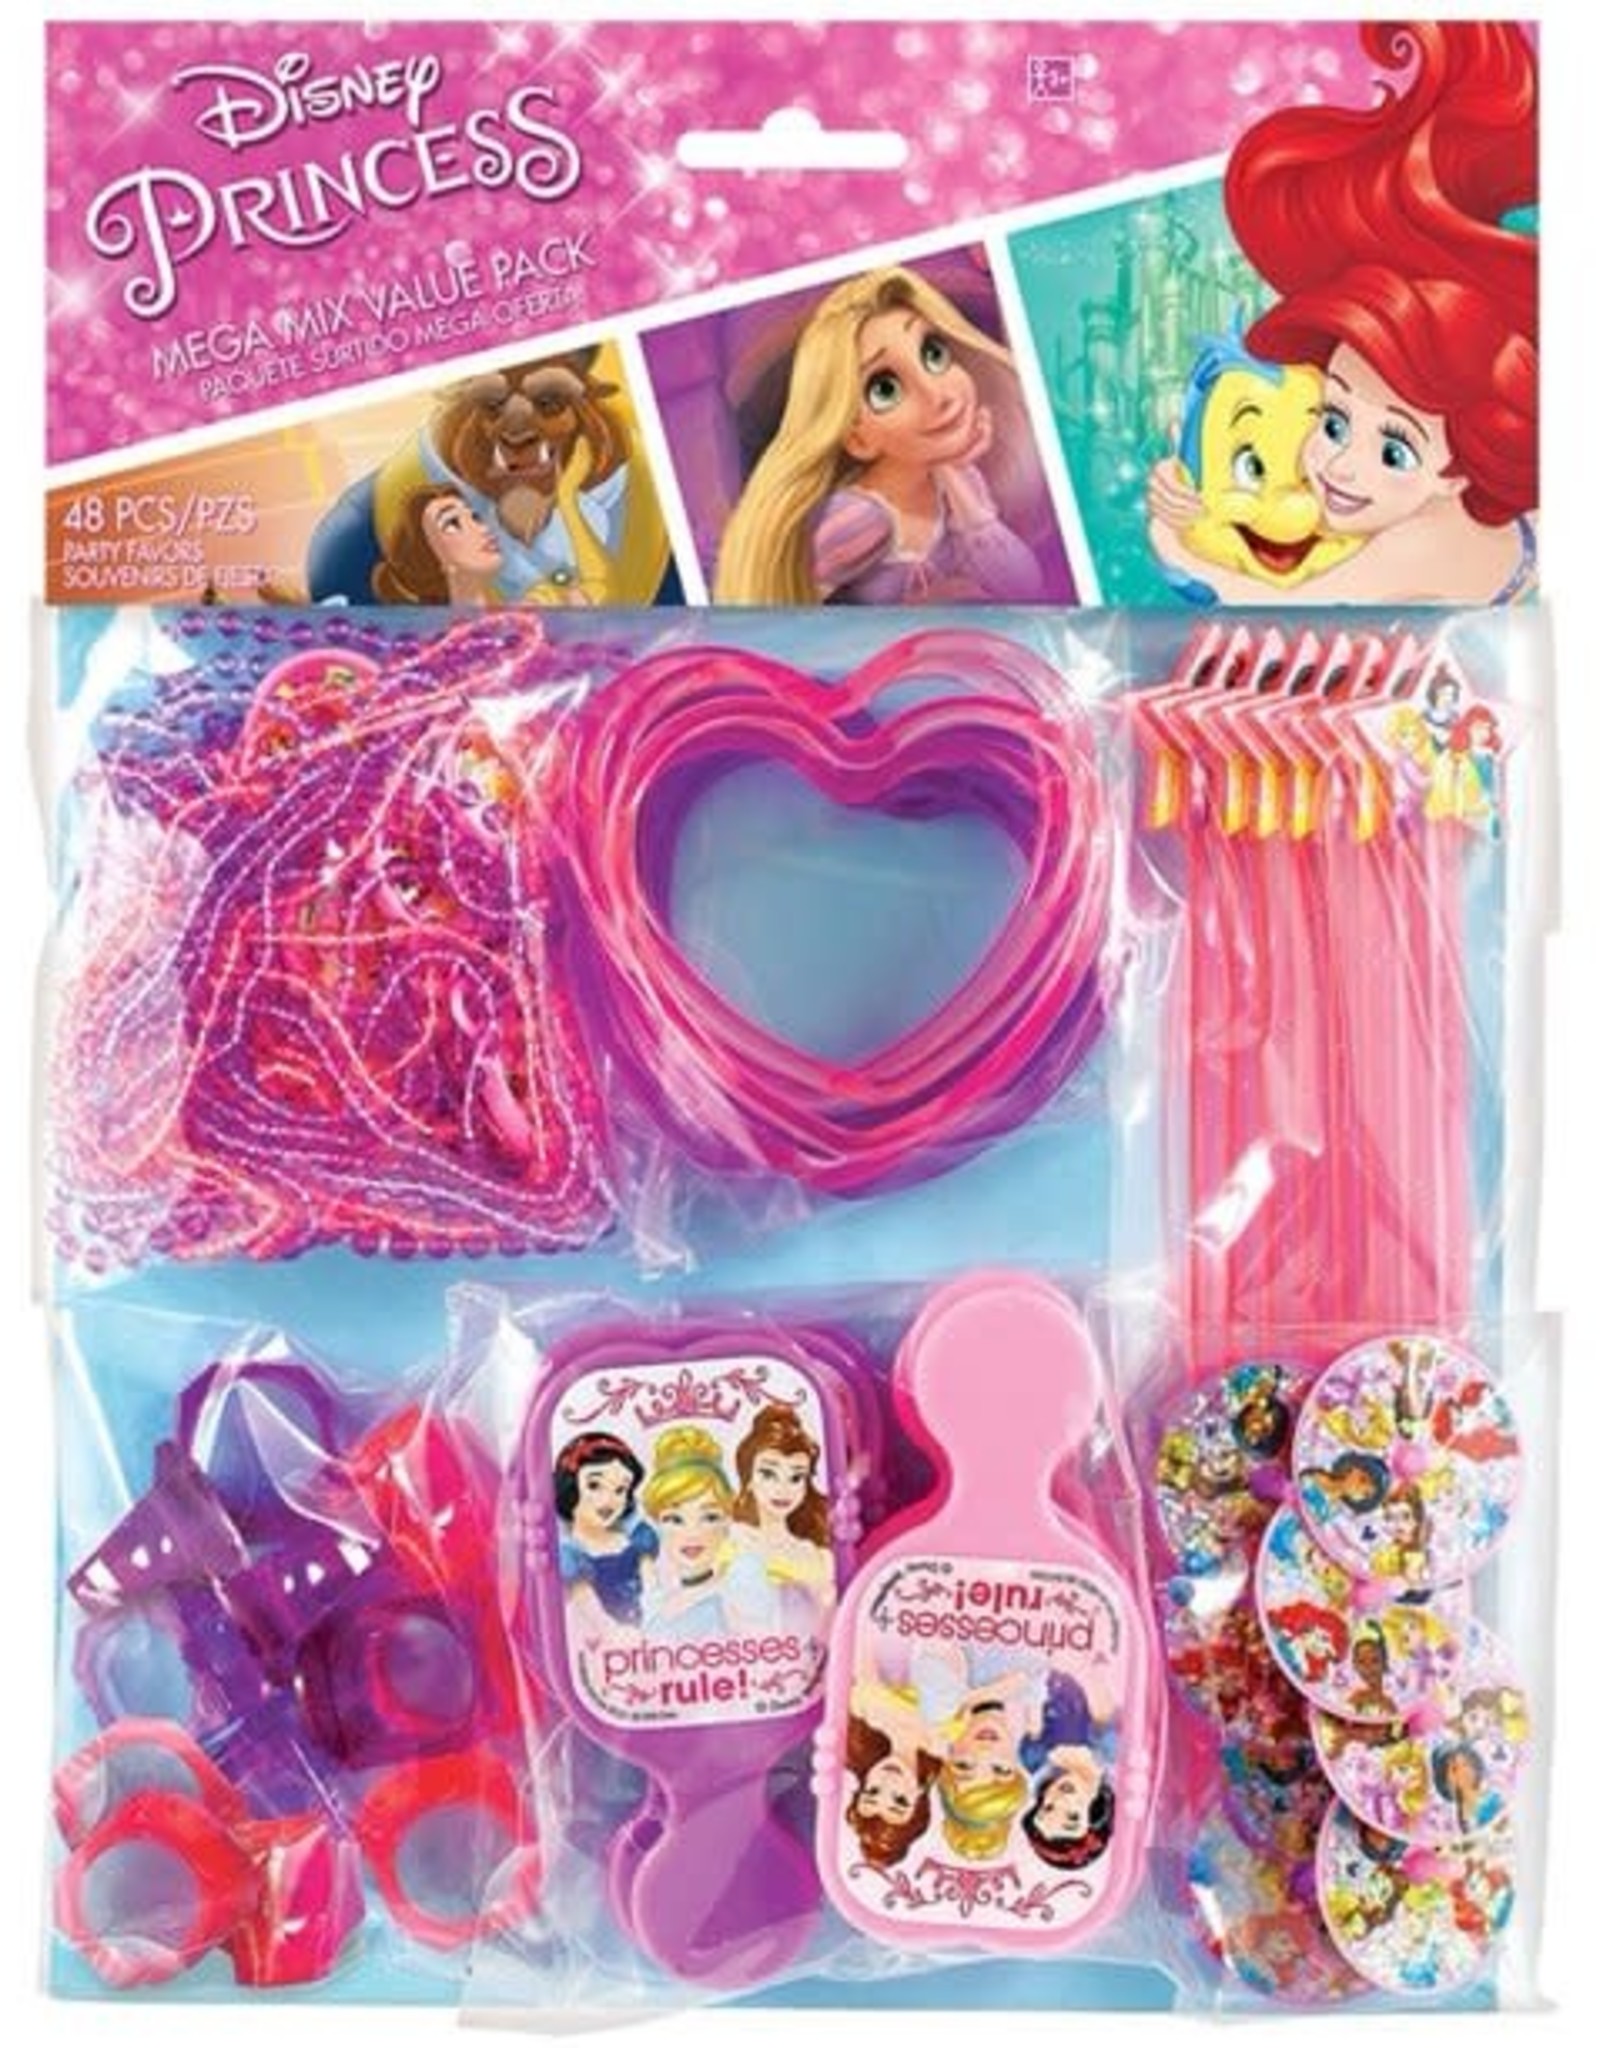 Disney Princess Dream Big Favor Value Pack